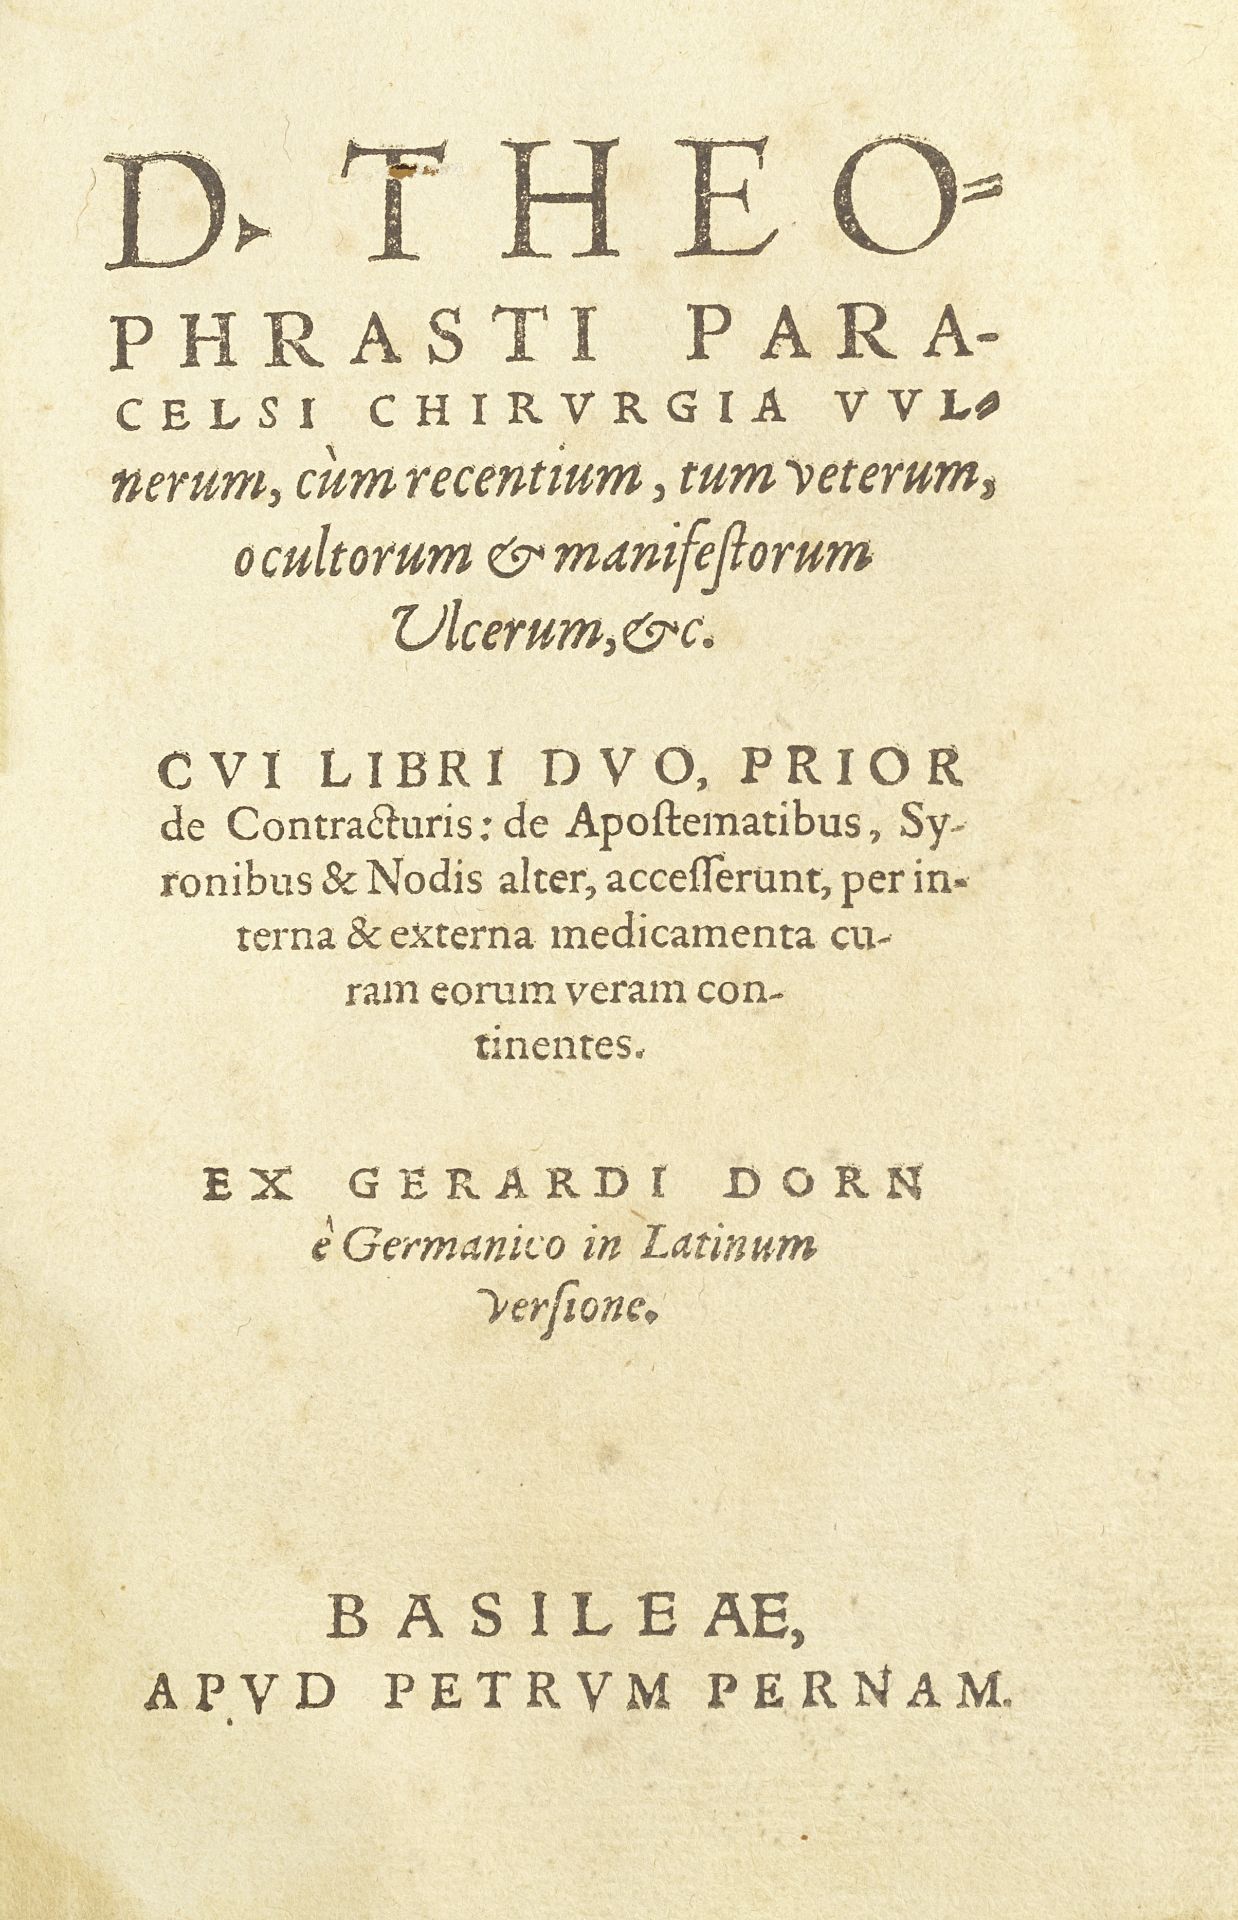 PARACELSUS Chirugia vulnerum, cum recentium, tum veterum, ocultorum & manifestorum ulcerum, &c.,...